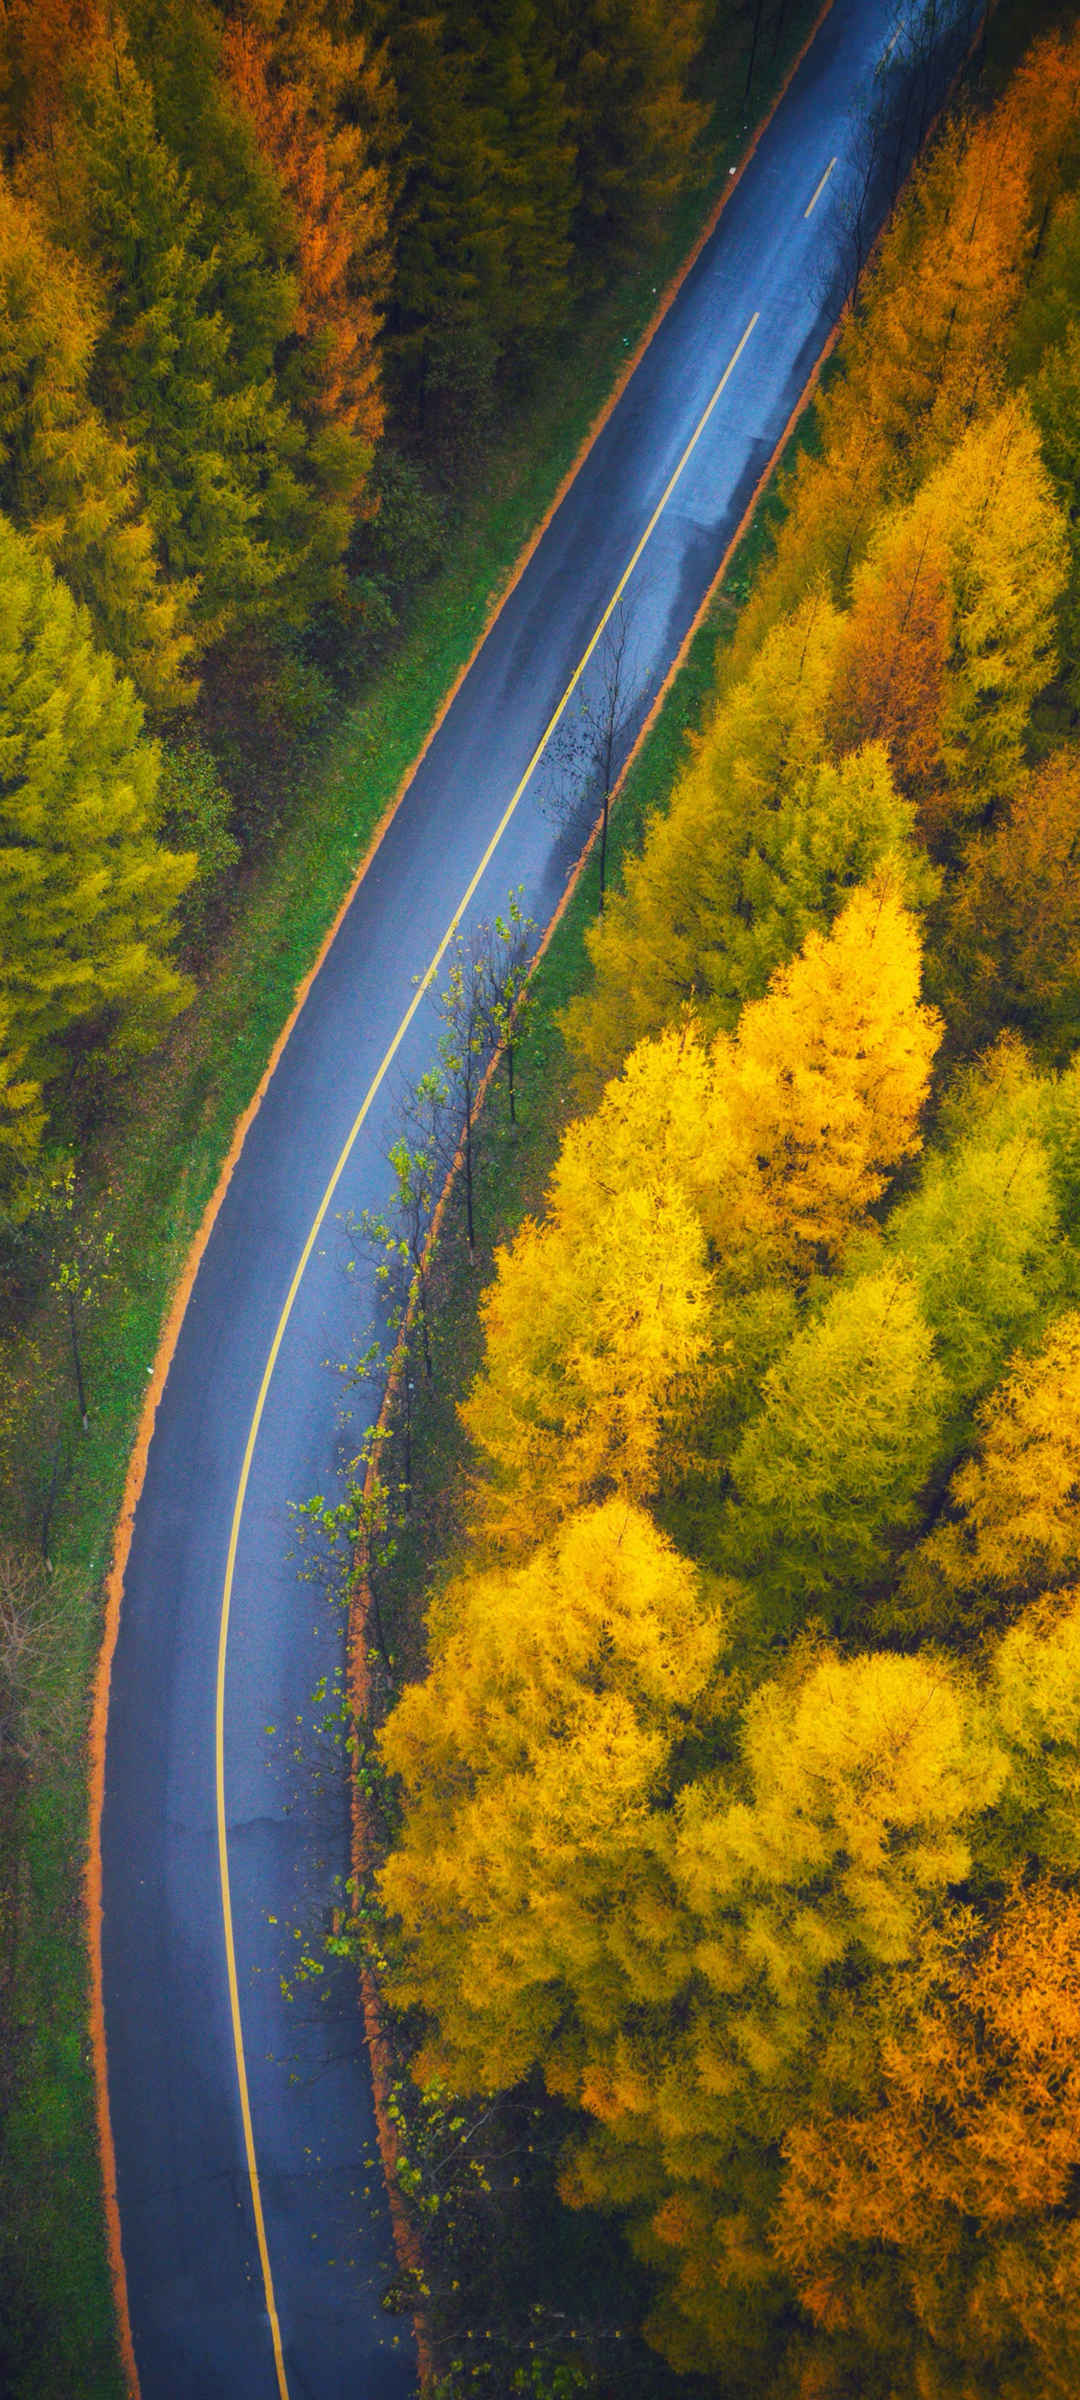 俯视 秋季 森林 美丽 公路风景 壁纸